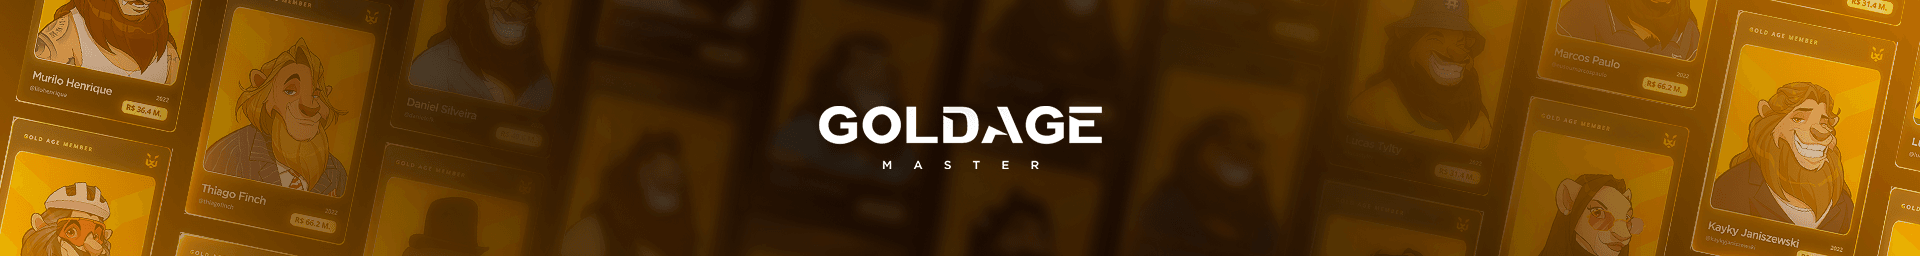 GOLDAGE banner